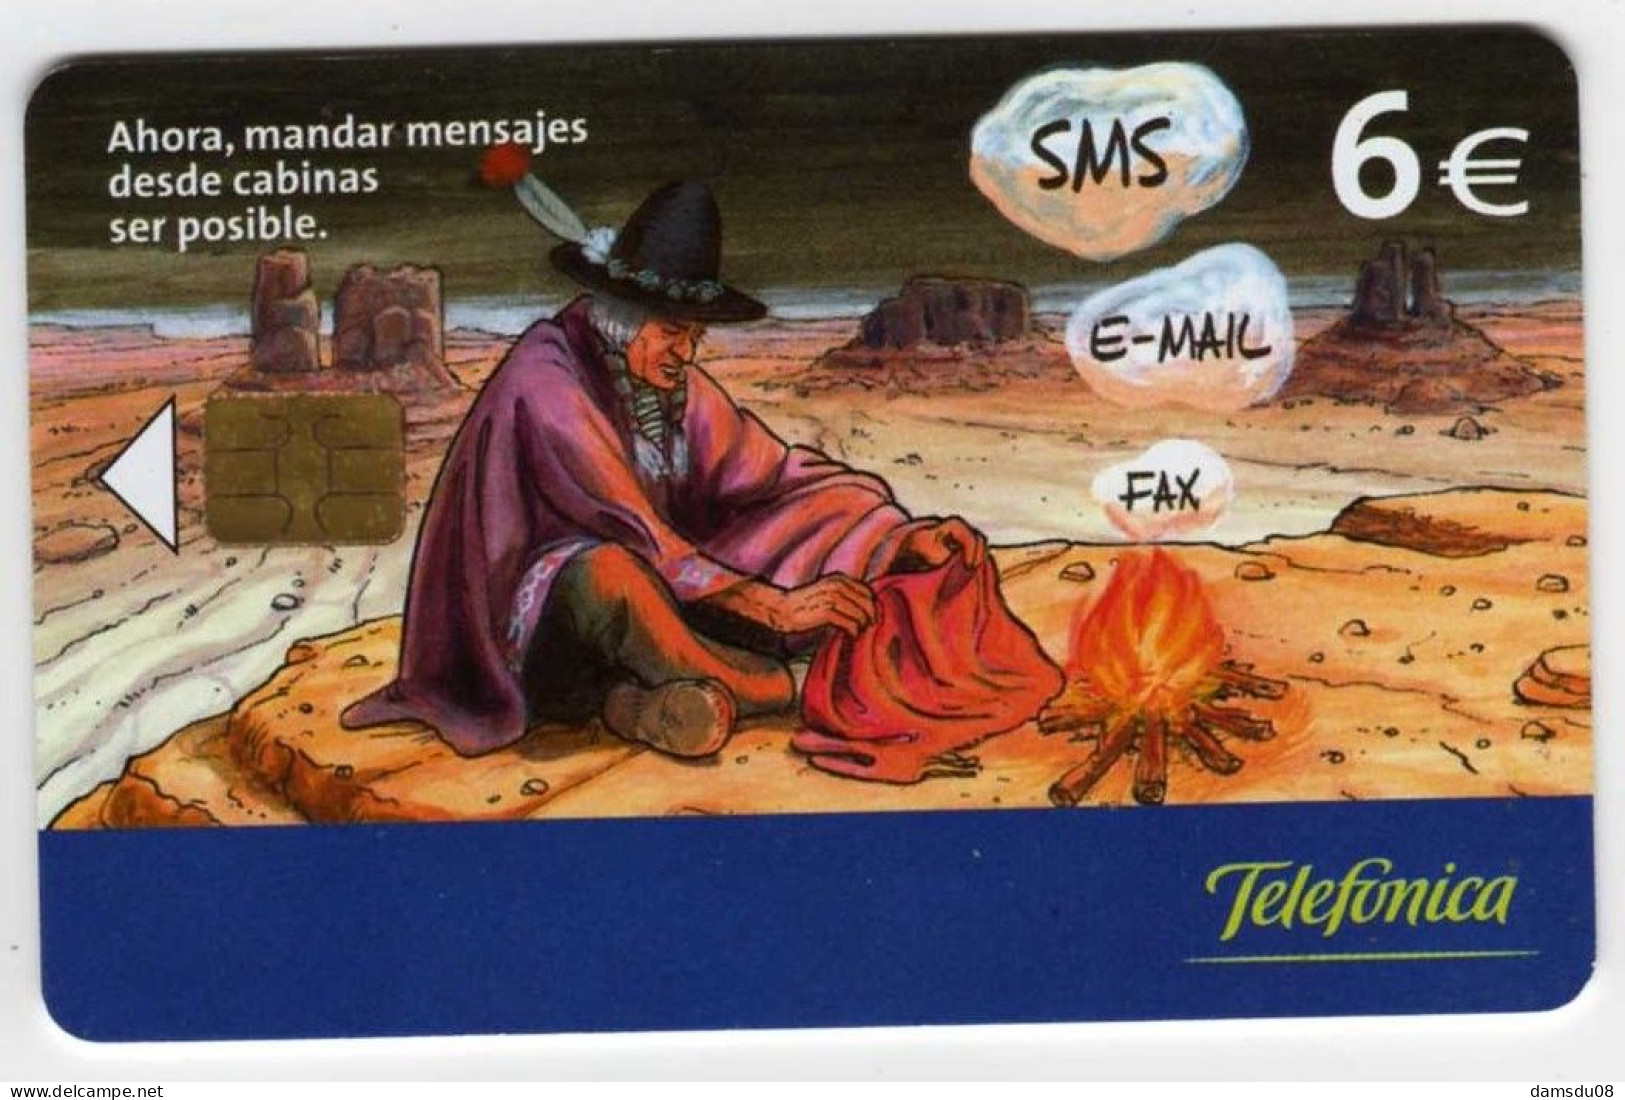 Espagne 6€ BD Indien SMS E-MAIL FAX  07/03 501.400 Exemplaires Vide - Basisausgaben